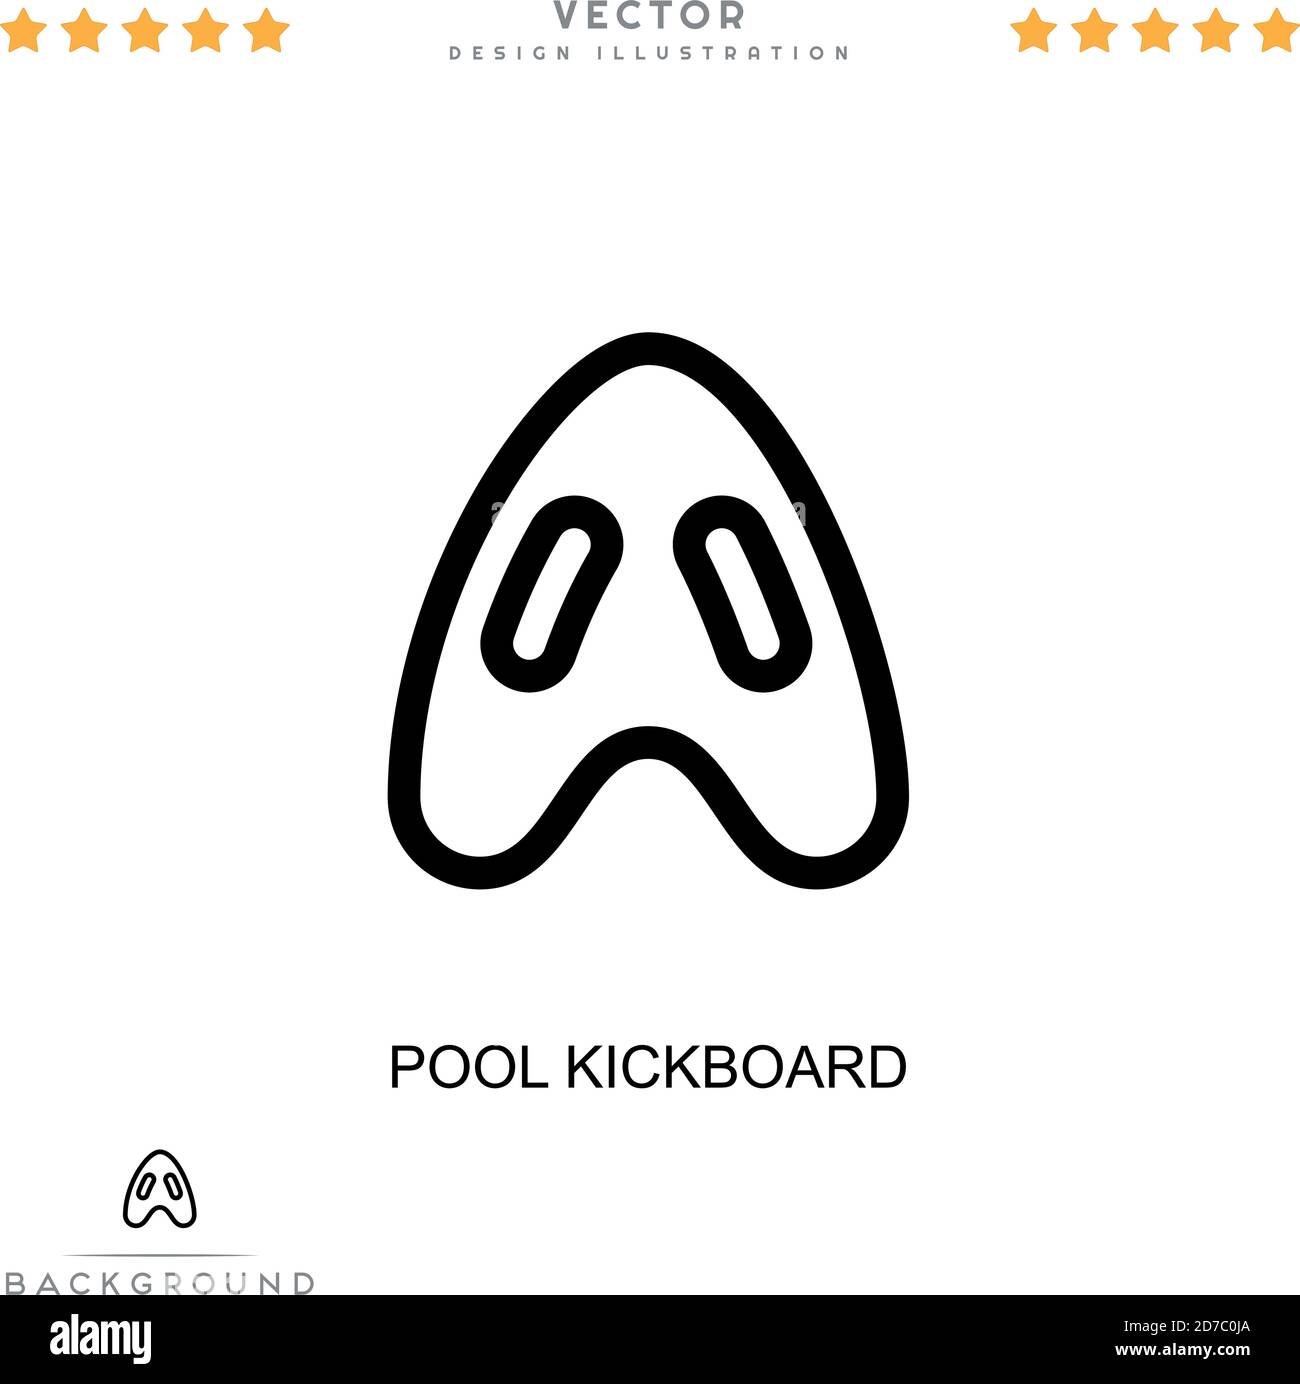 Icône de kickboard de piscine. Élément simple de la collecte des perturbations numériques. Icône Line Pool Kickboard pour modèles, infographies et bien plus encore Illustration de Vecteur